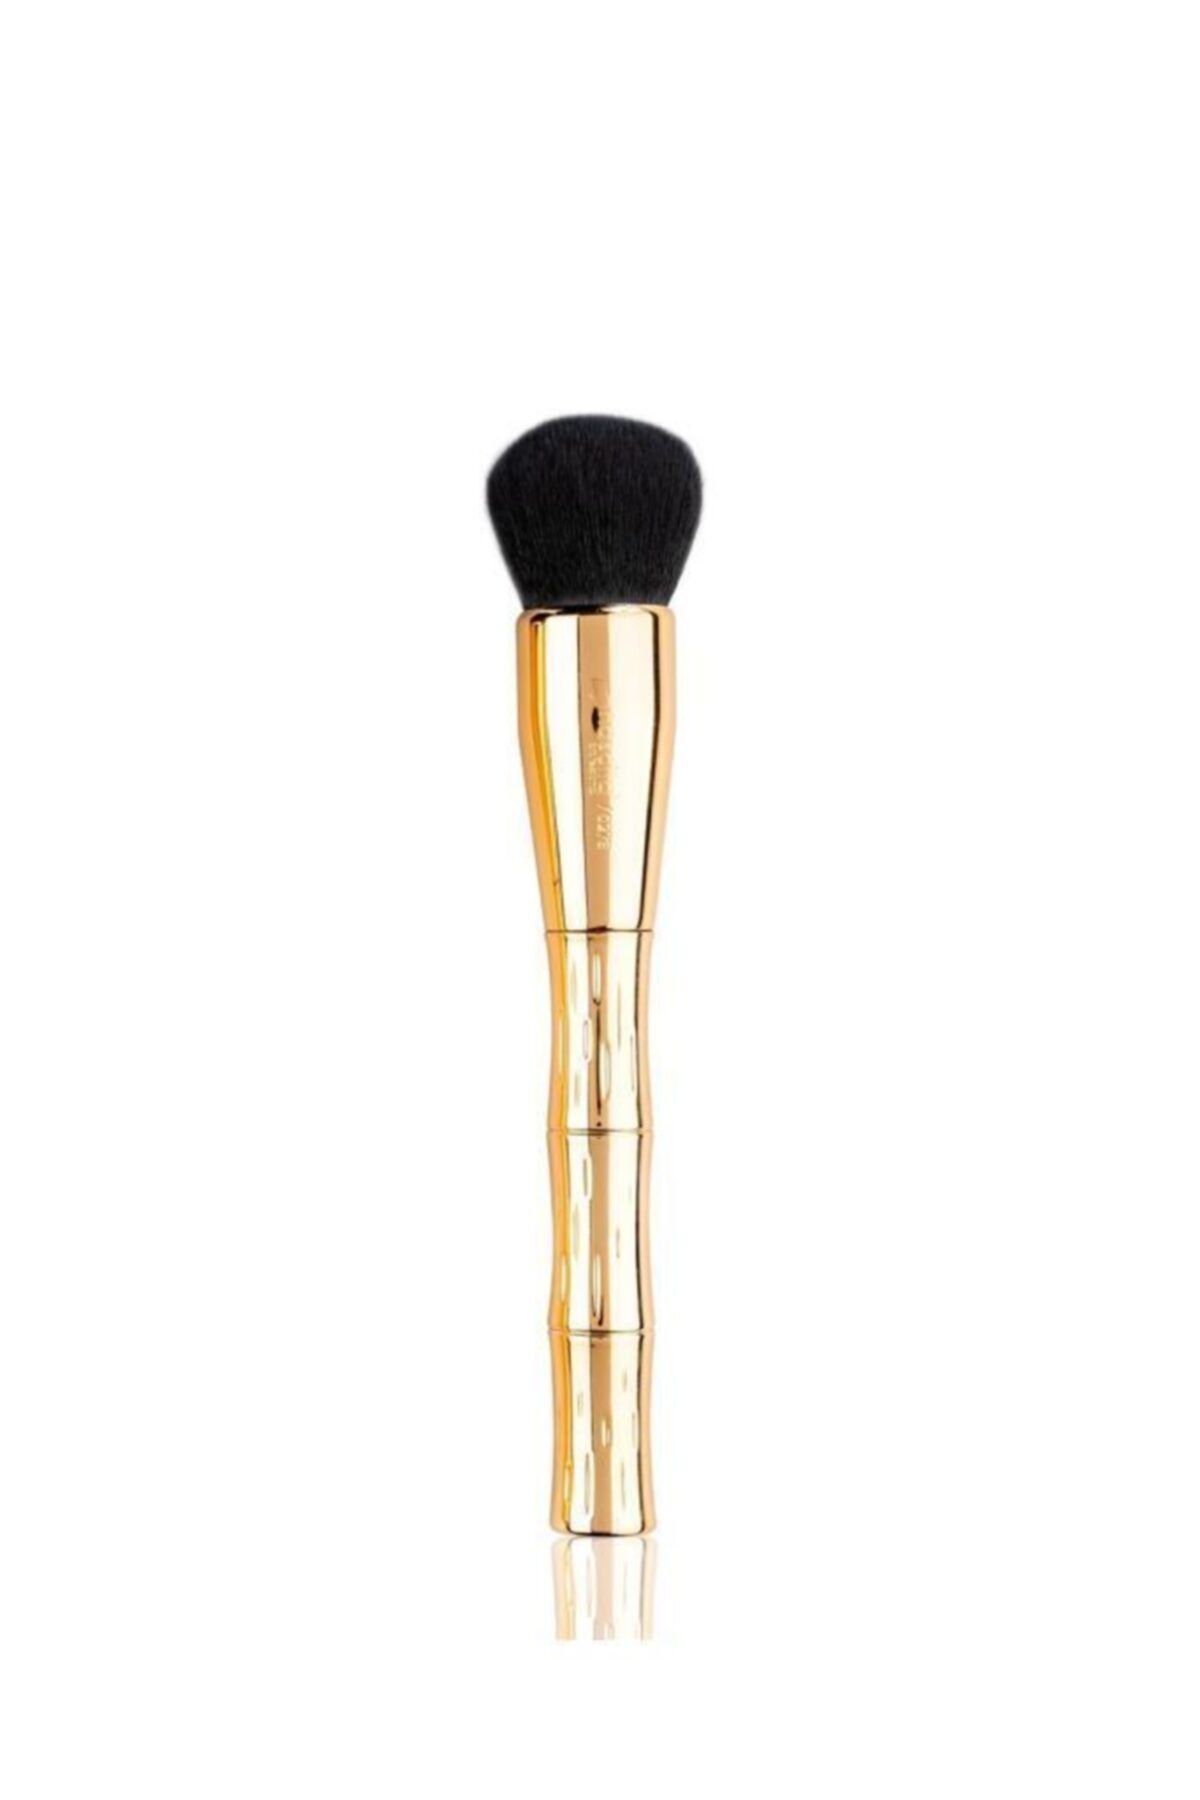 Nascita Marka: Gold Bamboo Kapatıcı Ve Fondöten Fırça Kategori: Makyaj Fırçası